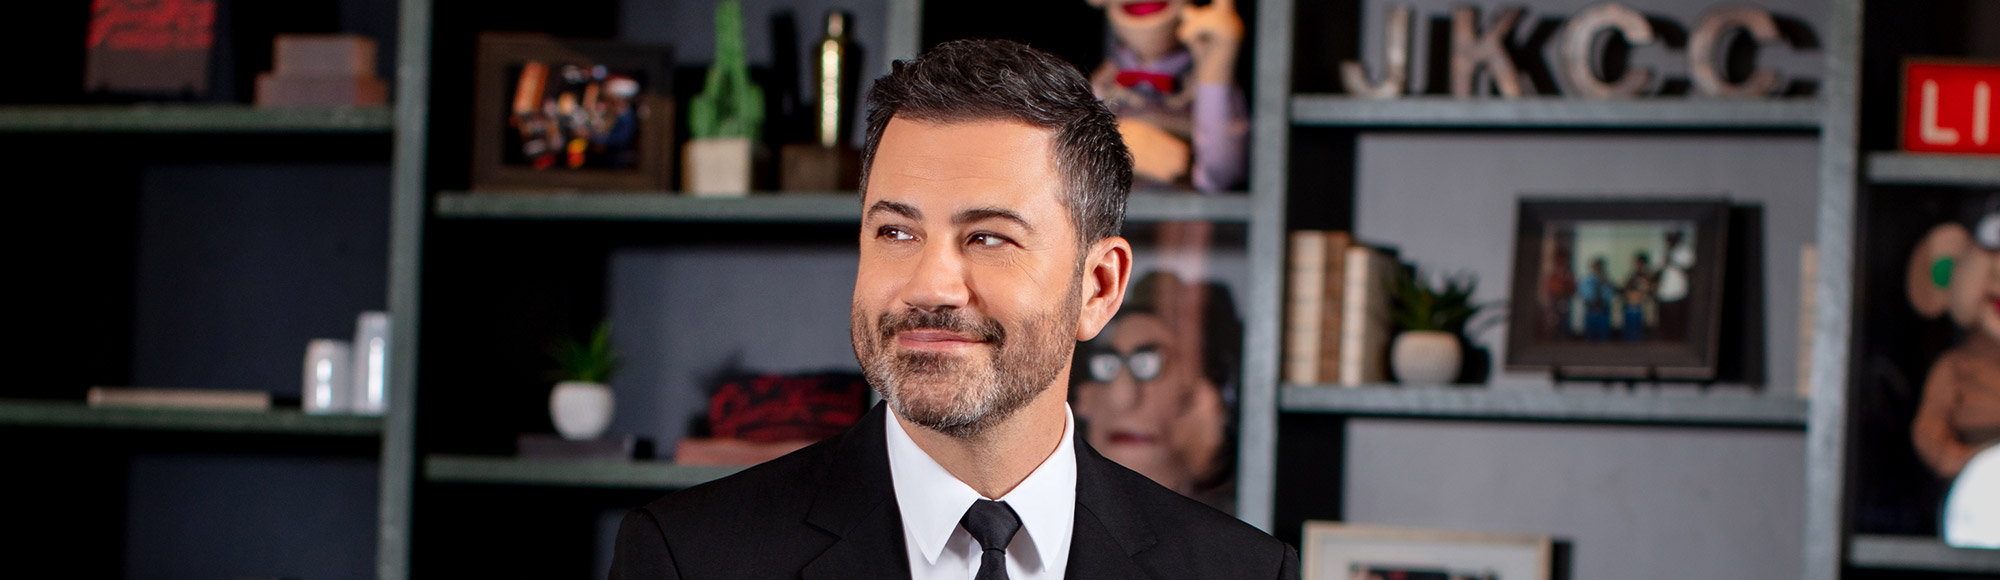 Jimmy Kimmel's Comedy Club show